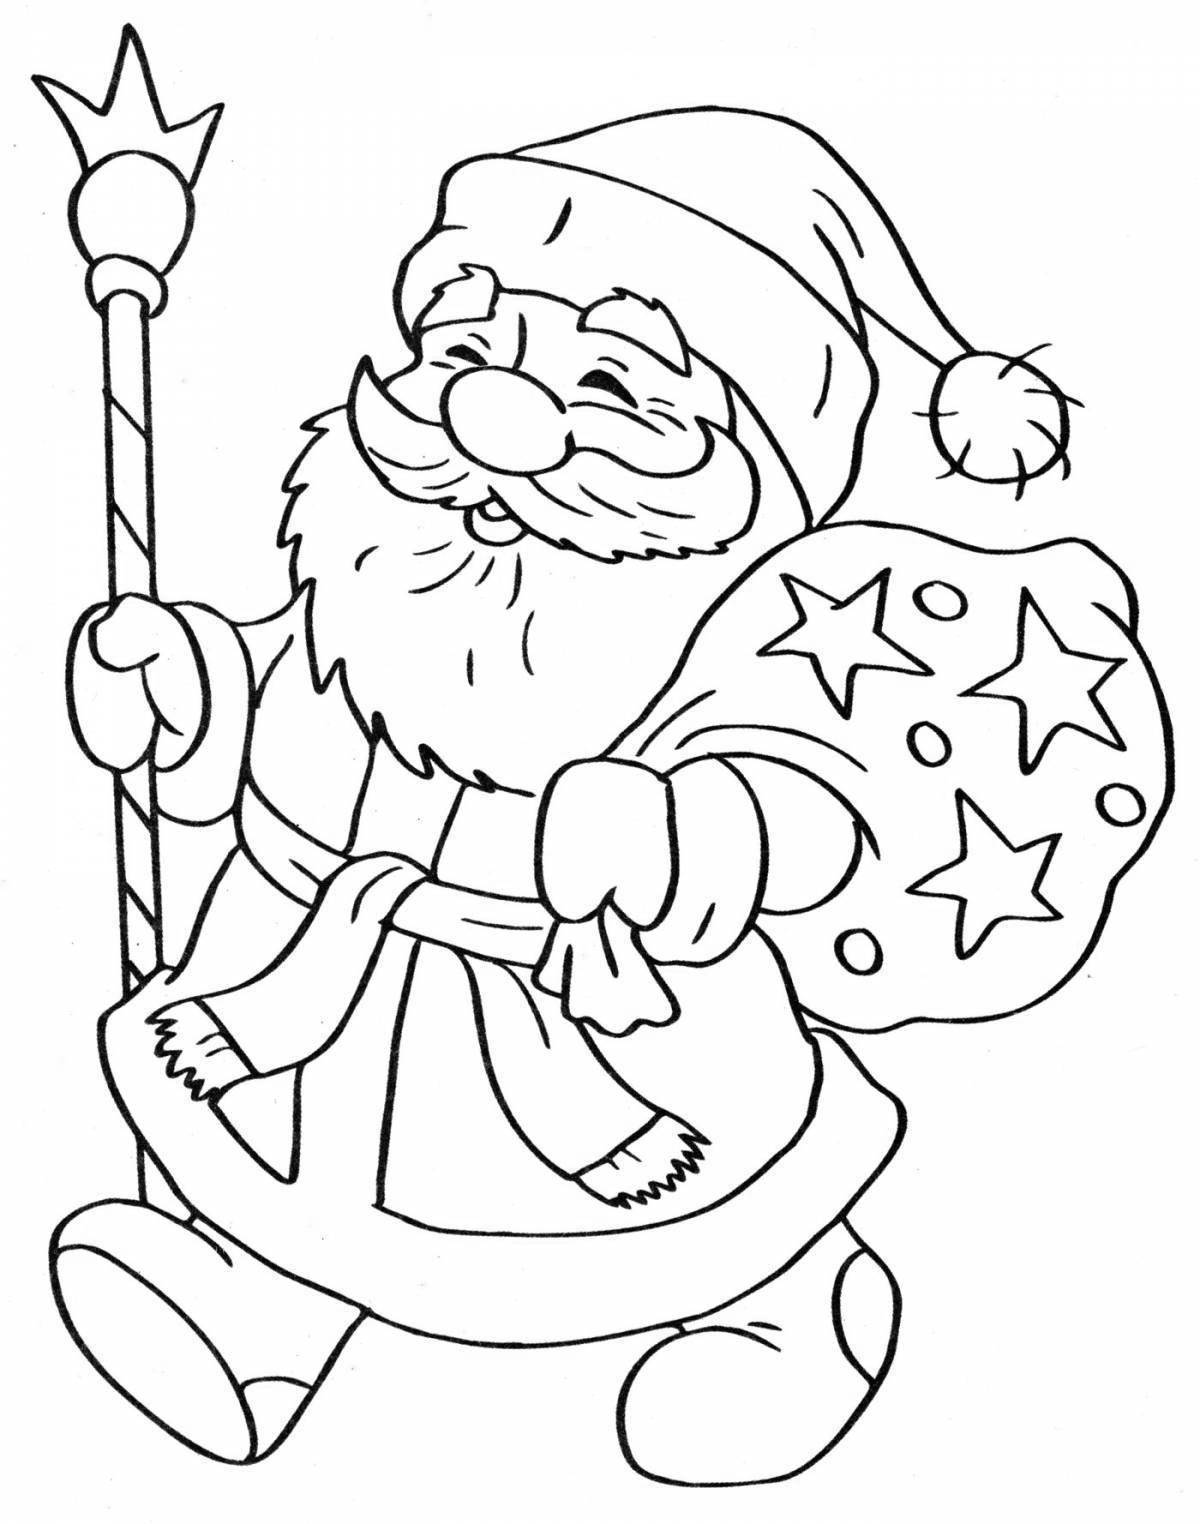 Rampant santa claus coloring book for kids